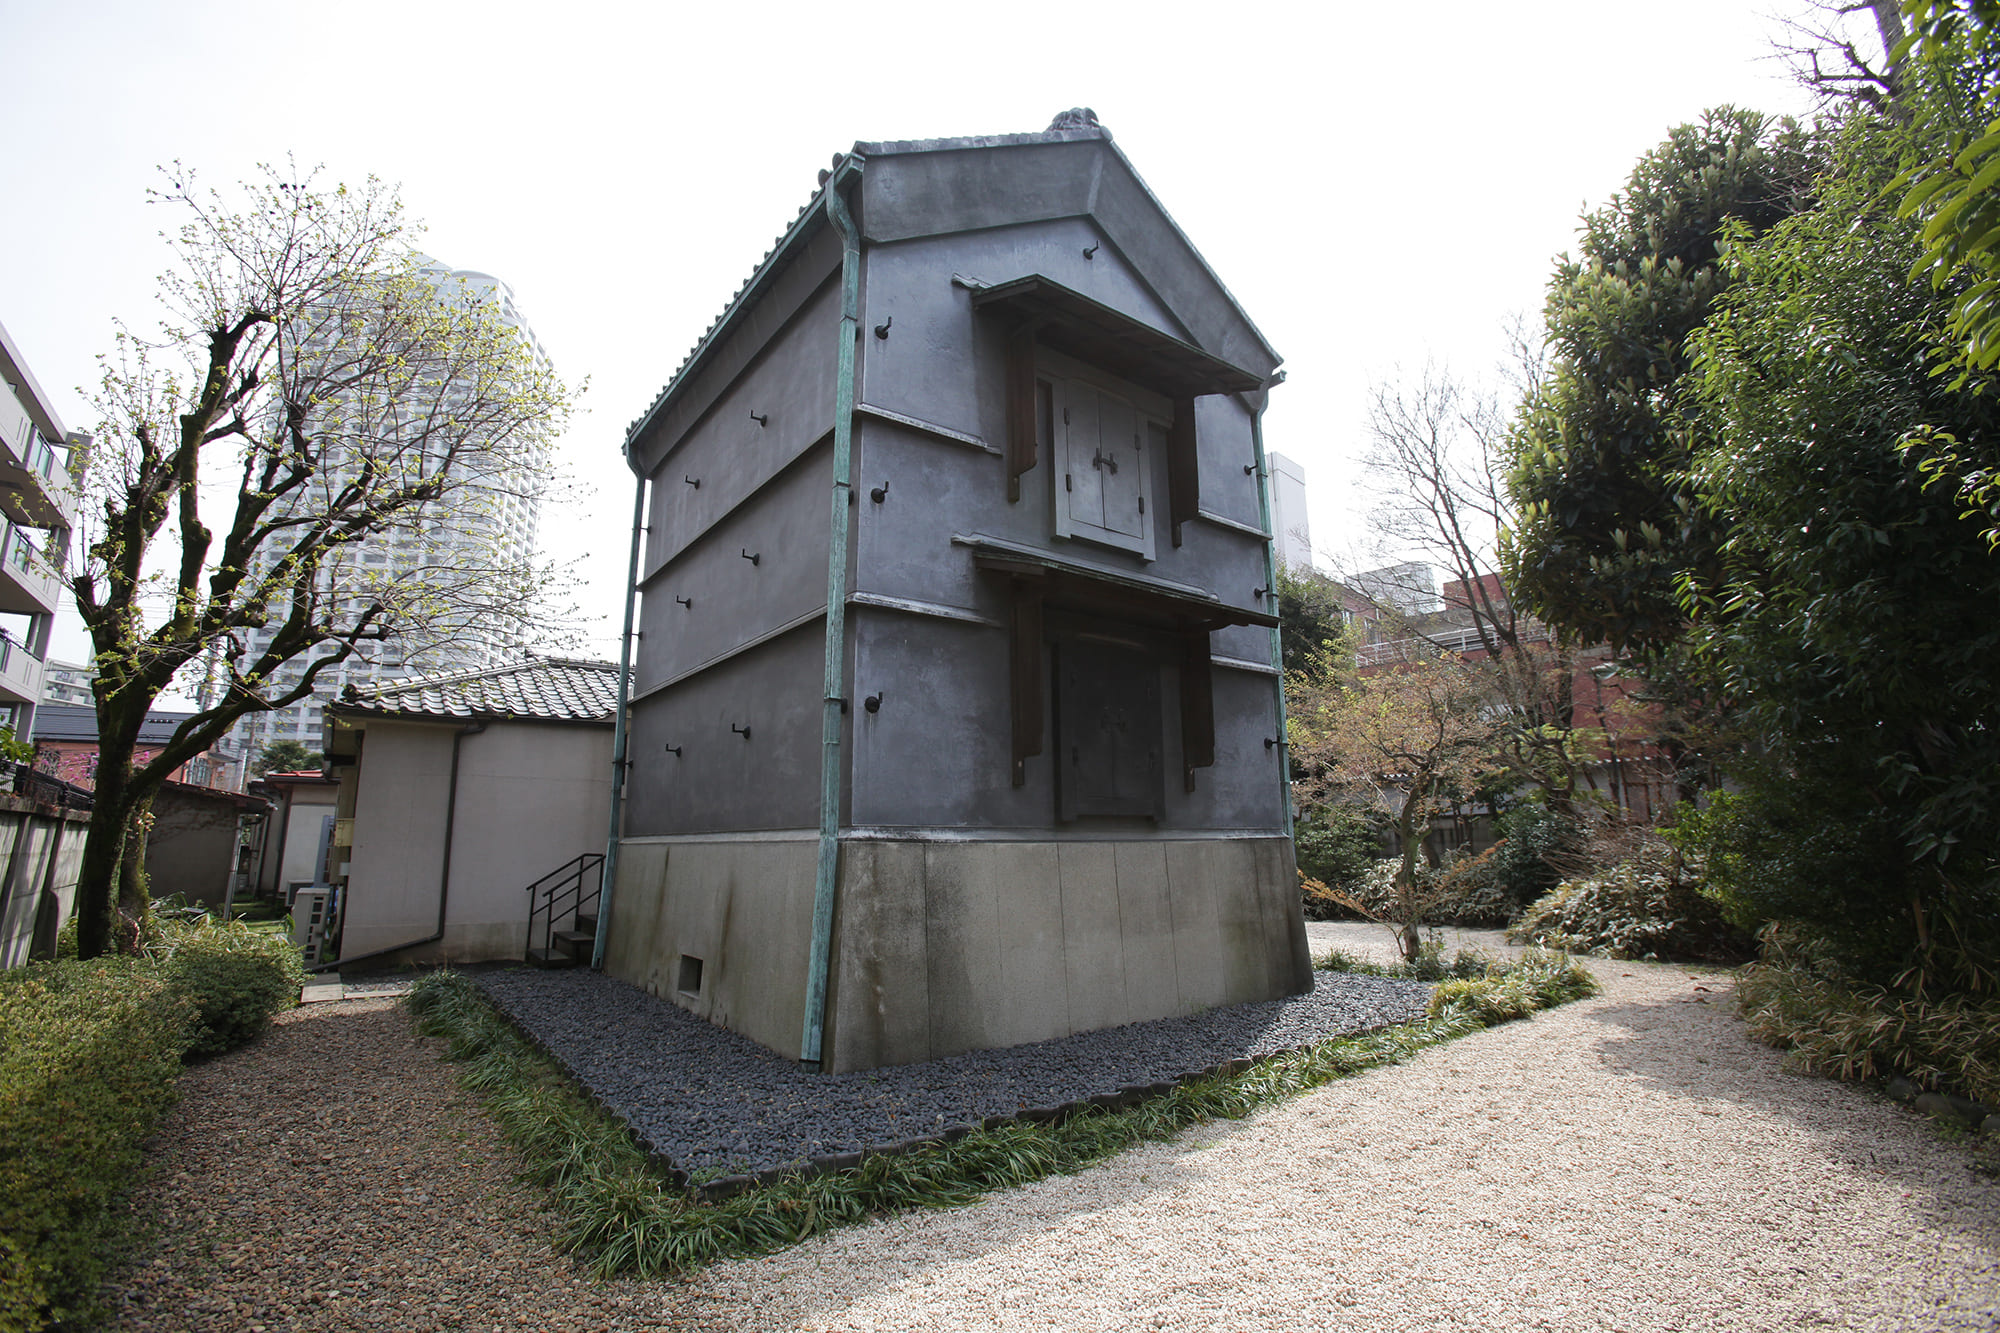 The Edogawa Rampo Residence